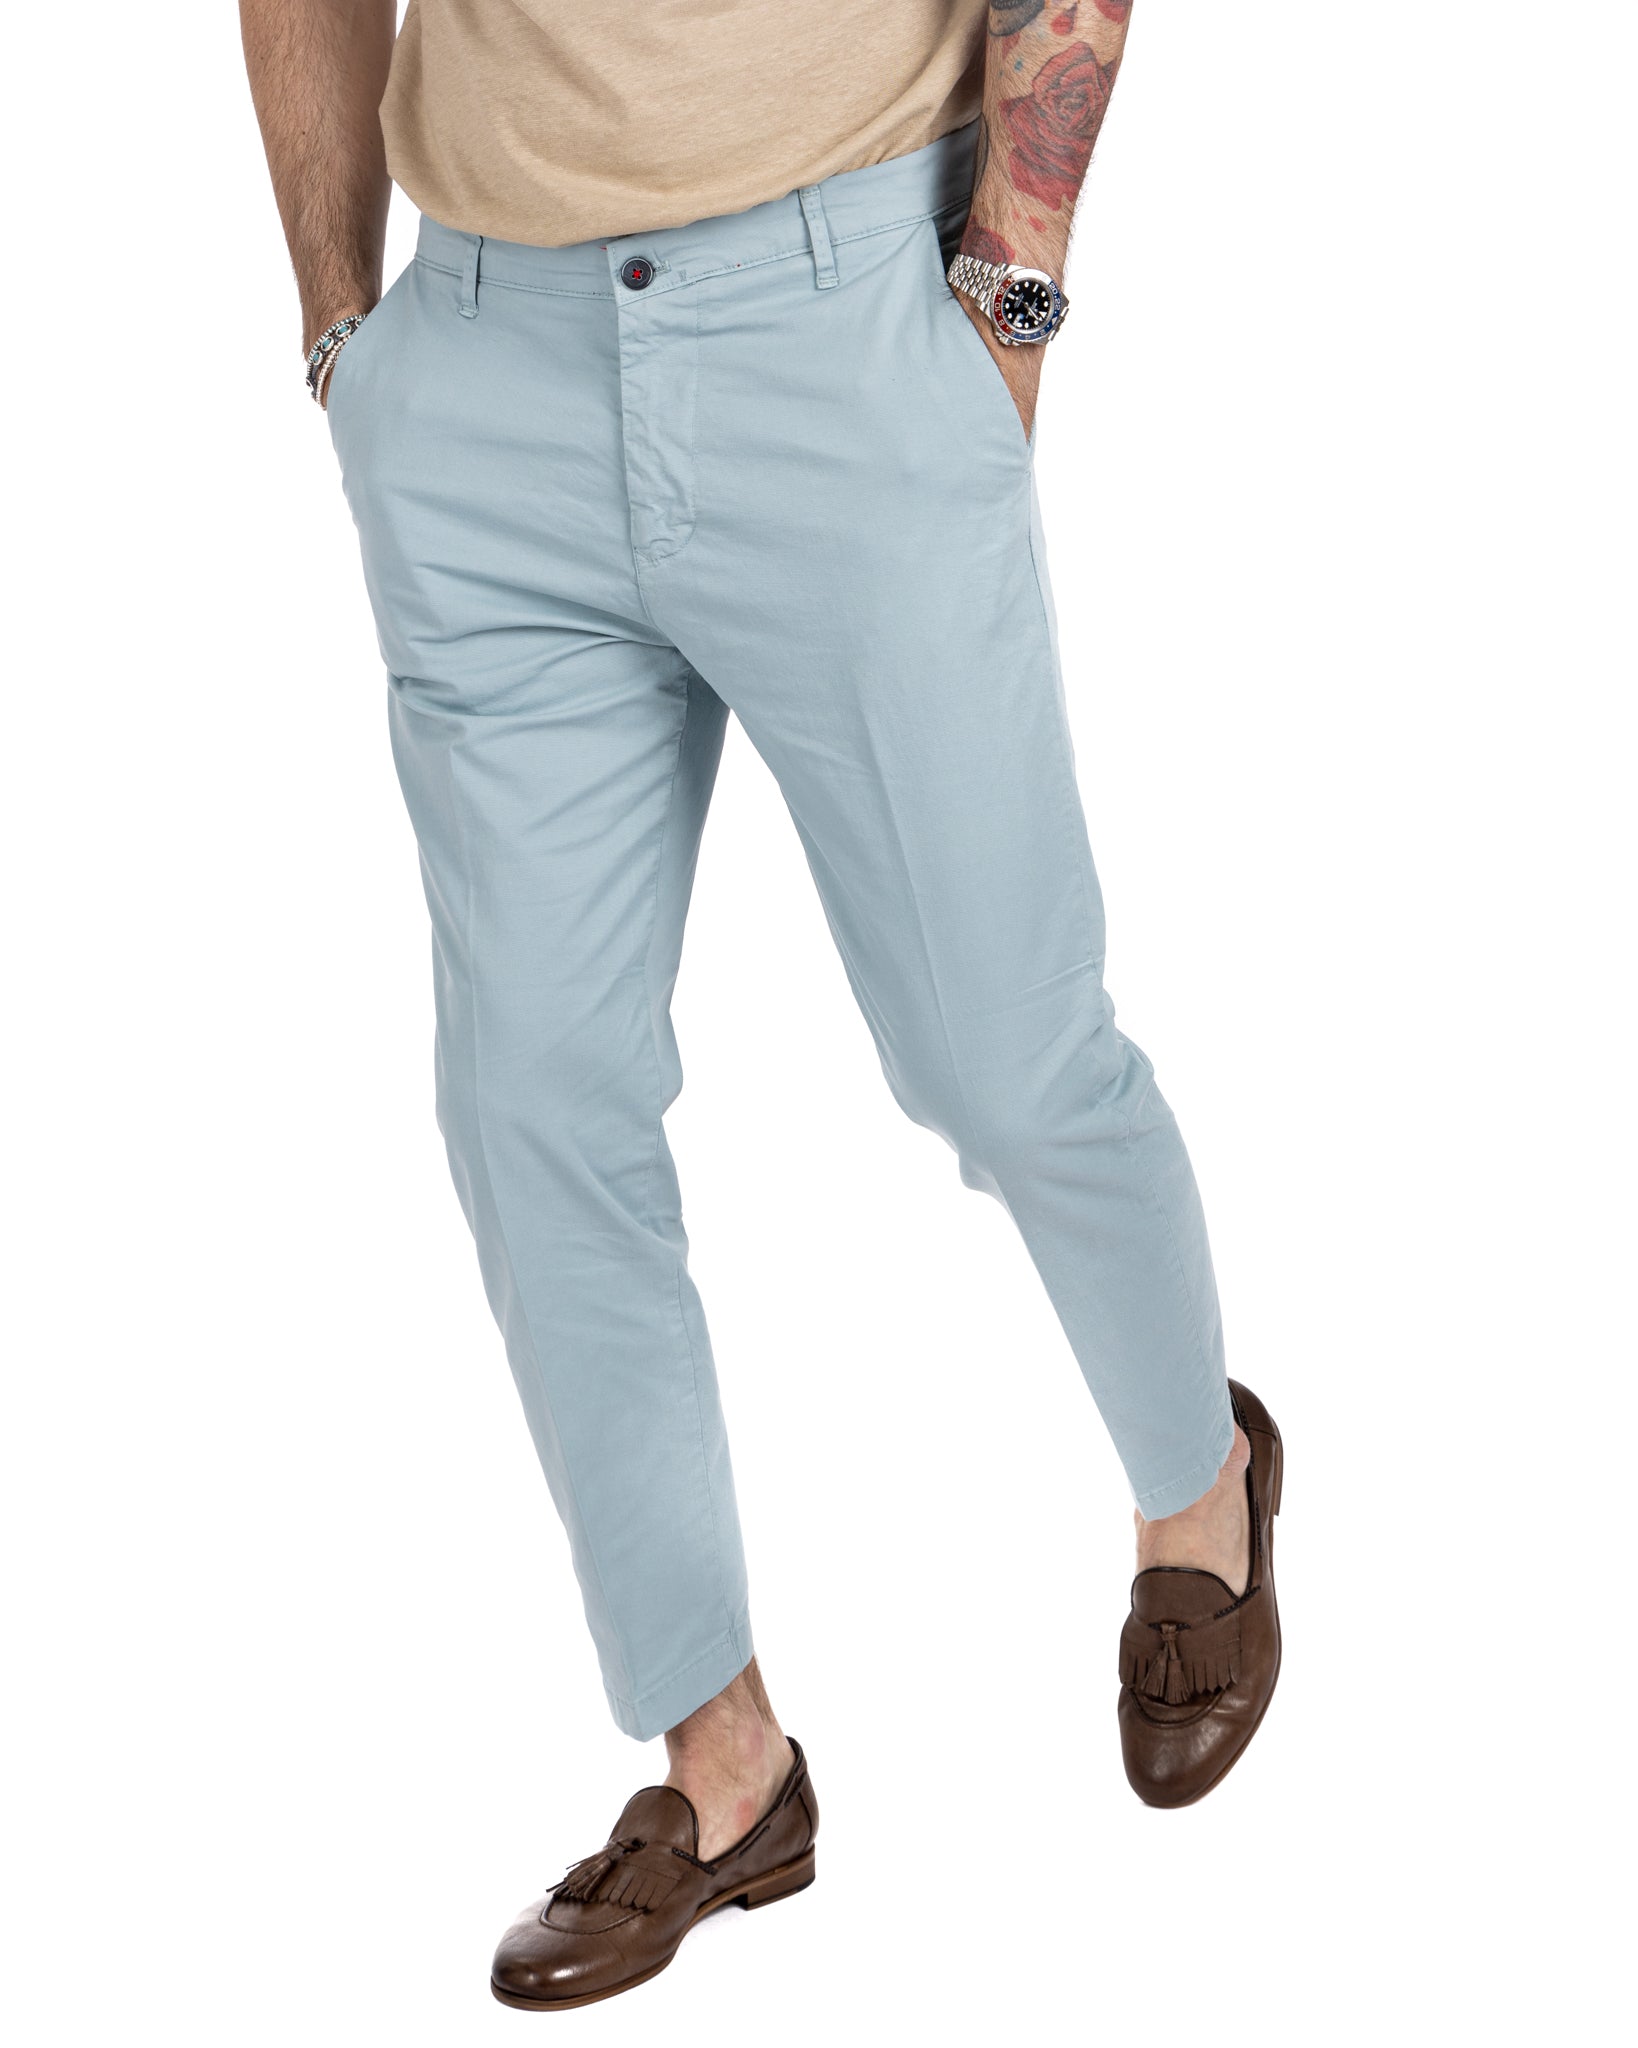 Lauren - light blue capri trousers